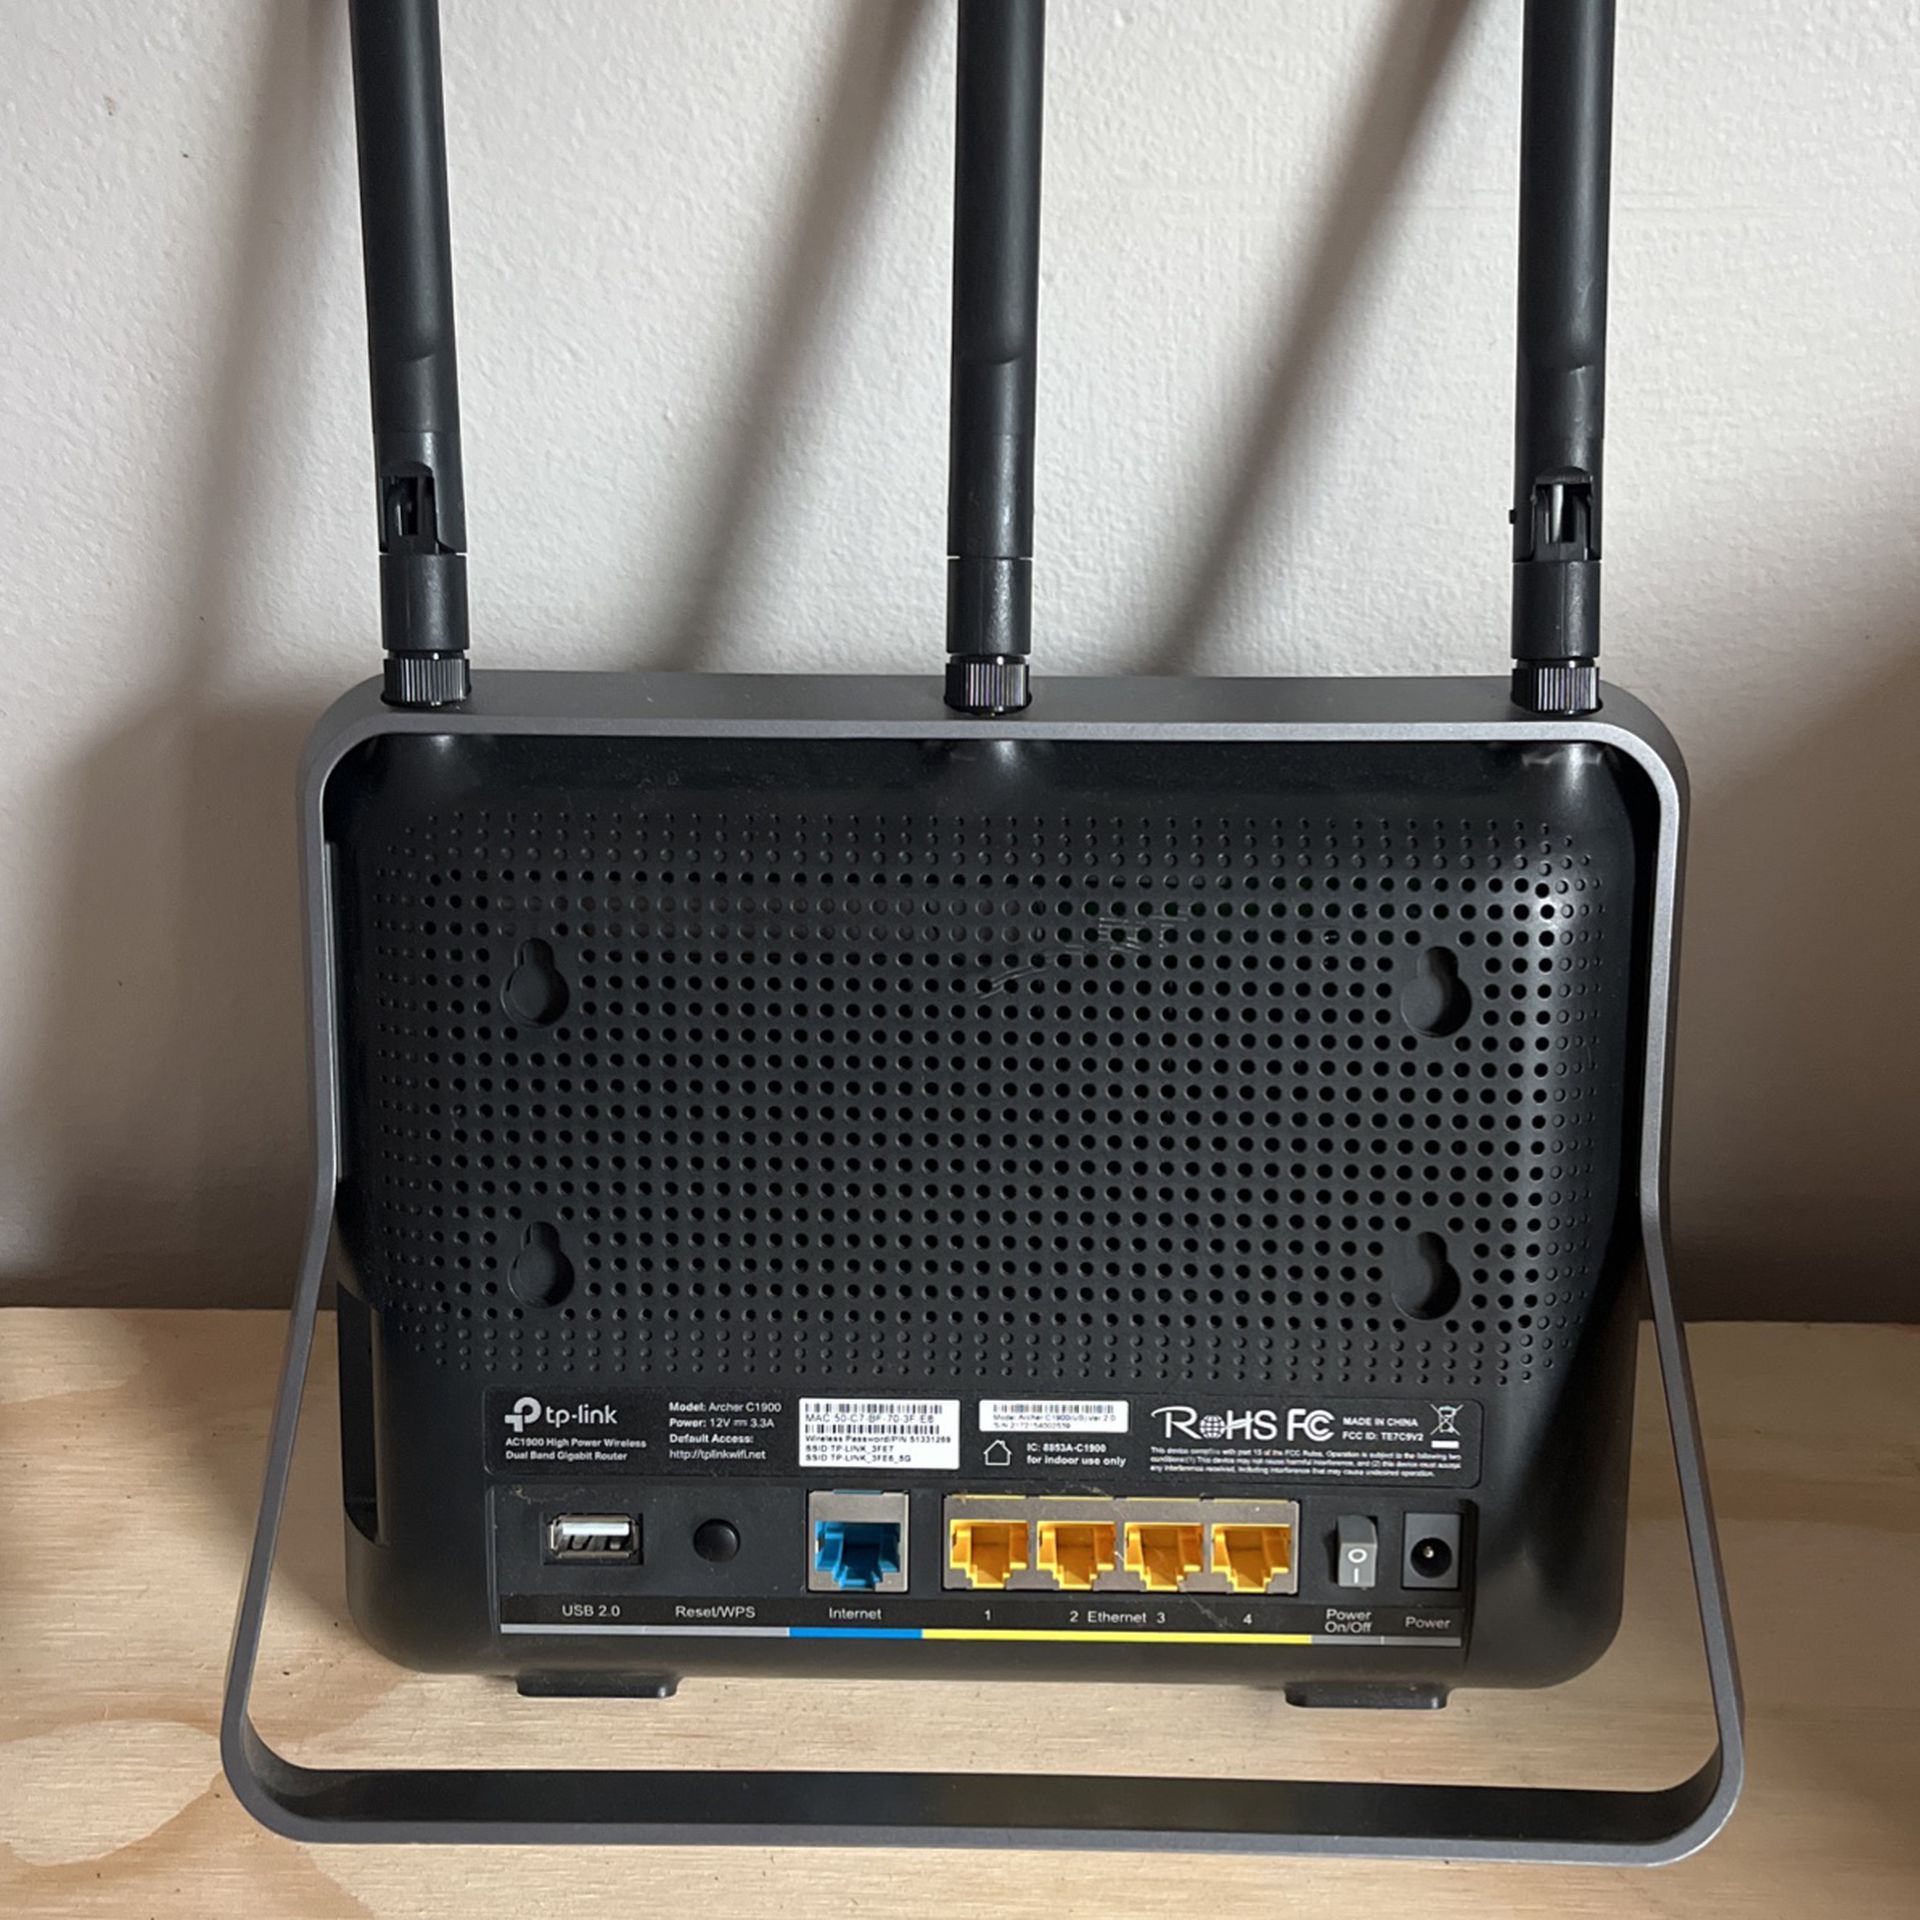 ArcherC 1900:  Wirelsss WiFi Router